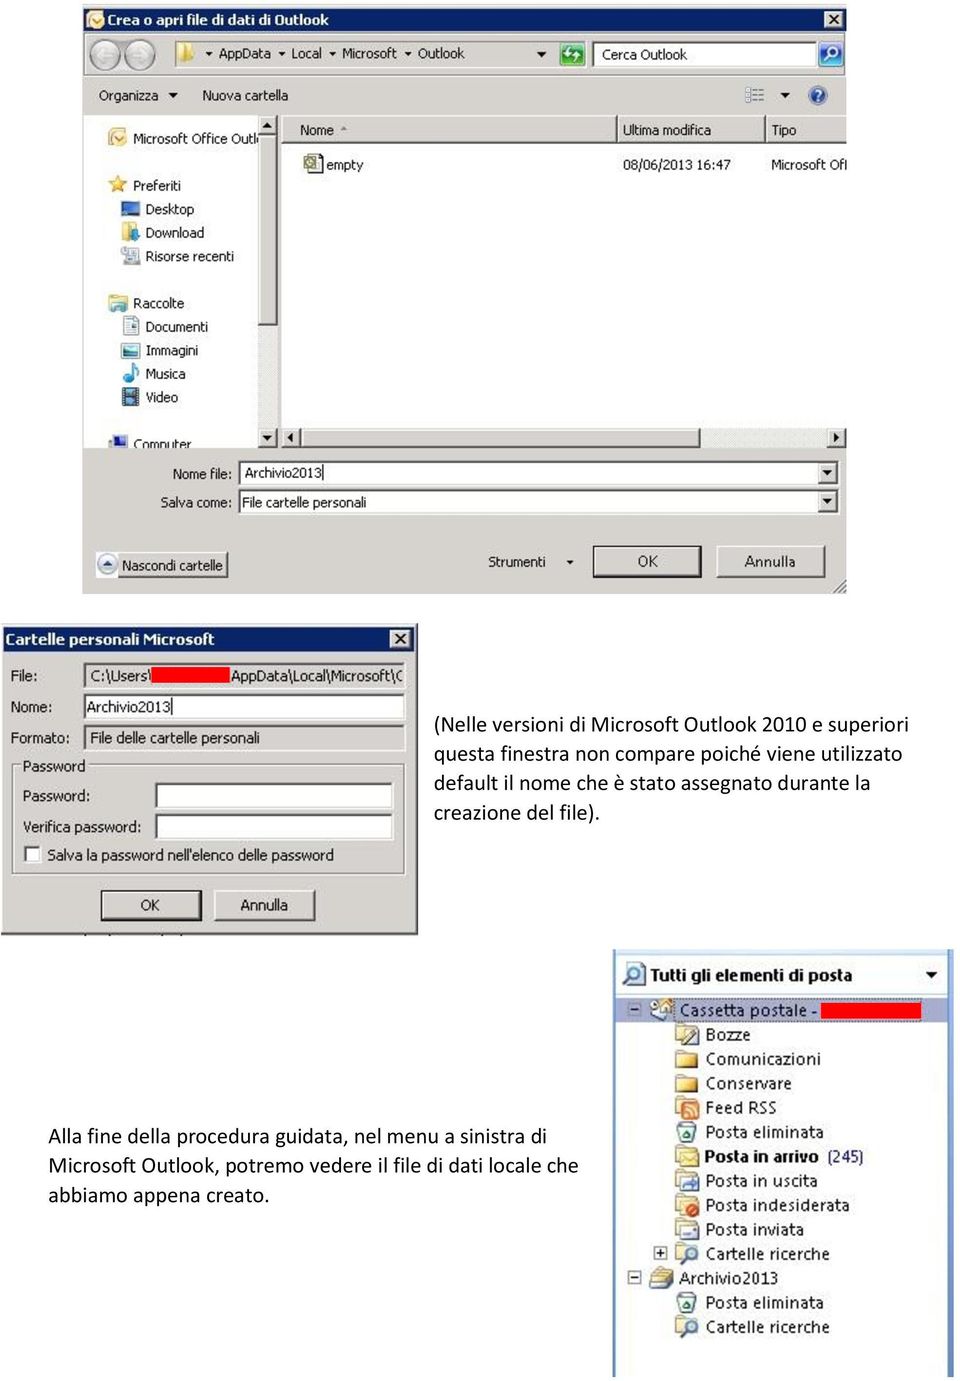 (Nelle versioni di Microsoft Outlook 2010 e superiori questa finestra non